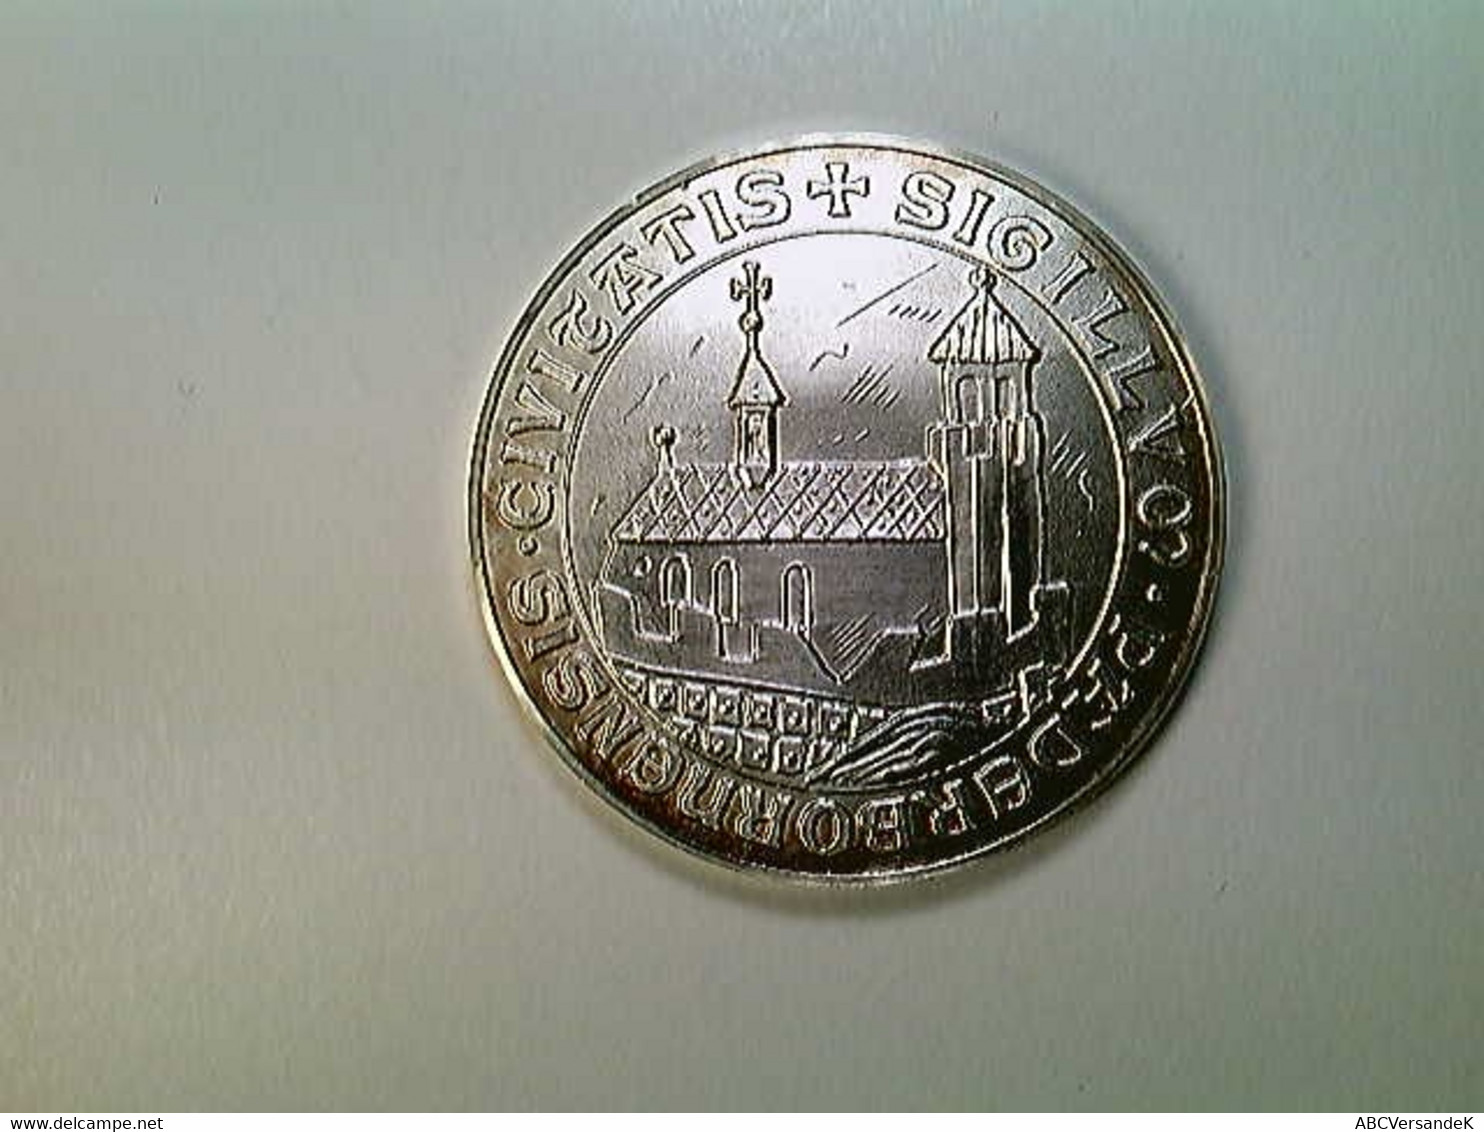 Medaille Paderborn 1650 Nach Merian, 40 Mm, 30 Gr., Silber, SELTEN! - Numismatiek